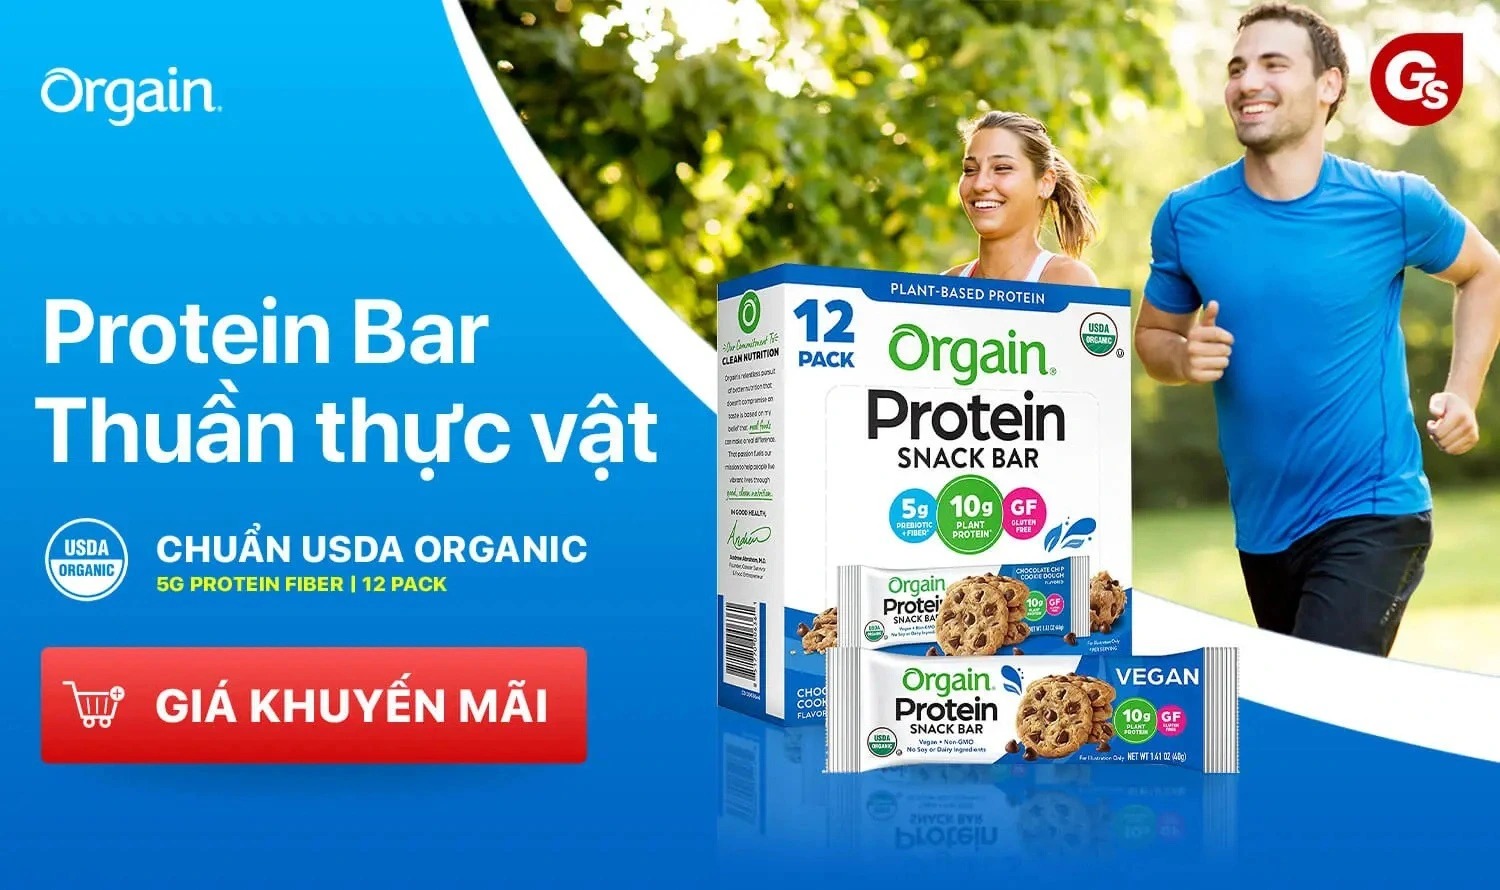 orgain-protein-bar